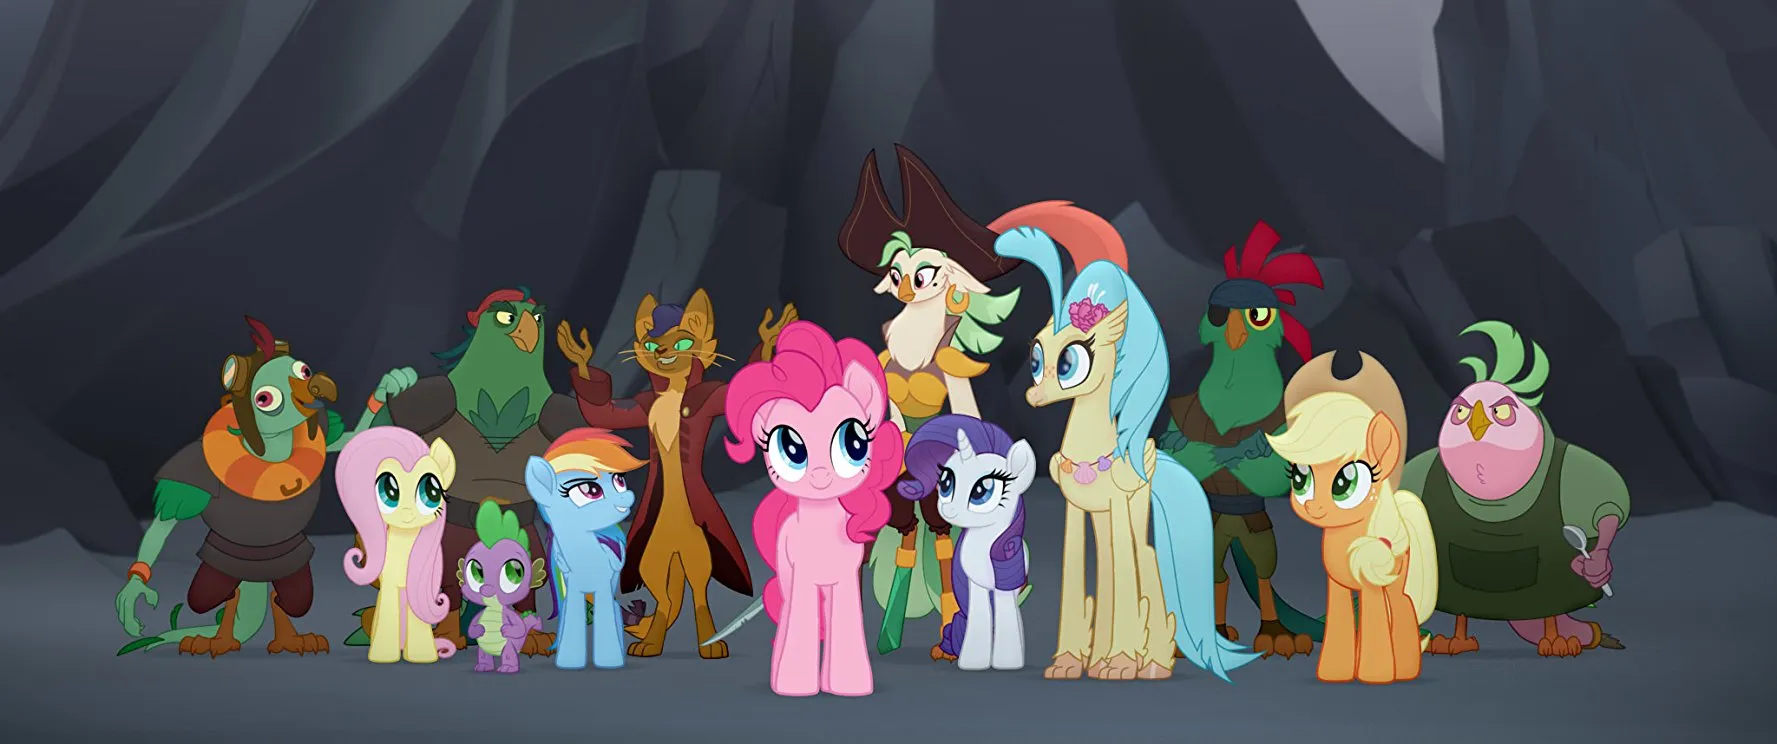 Review phim My Little Pony: The Movie (Pony Bé Nhỏ): đồ họa không đẹp